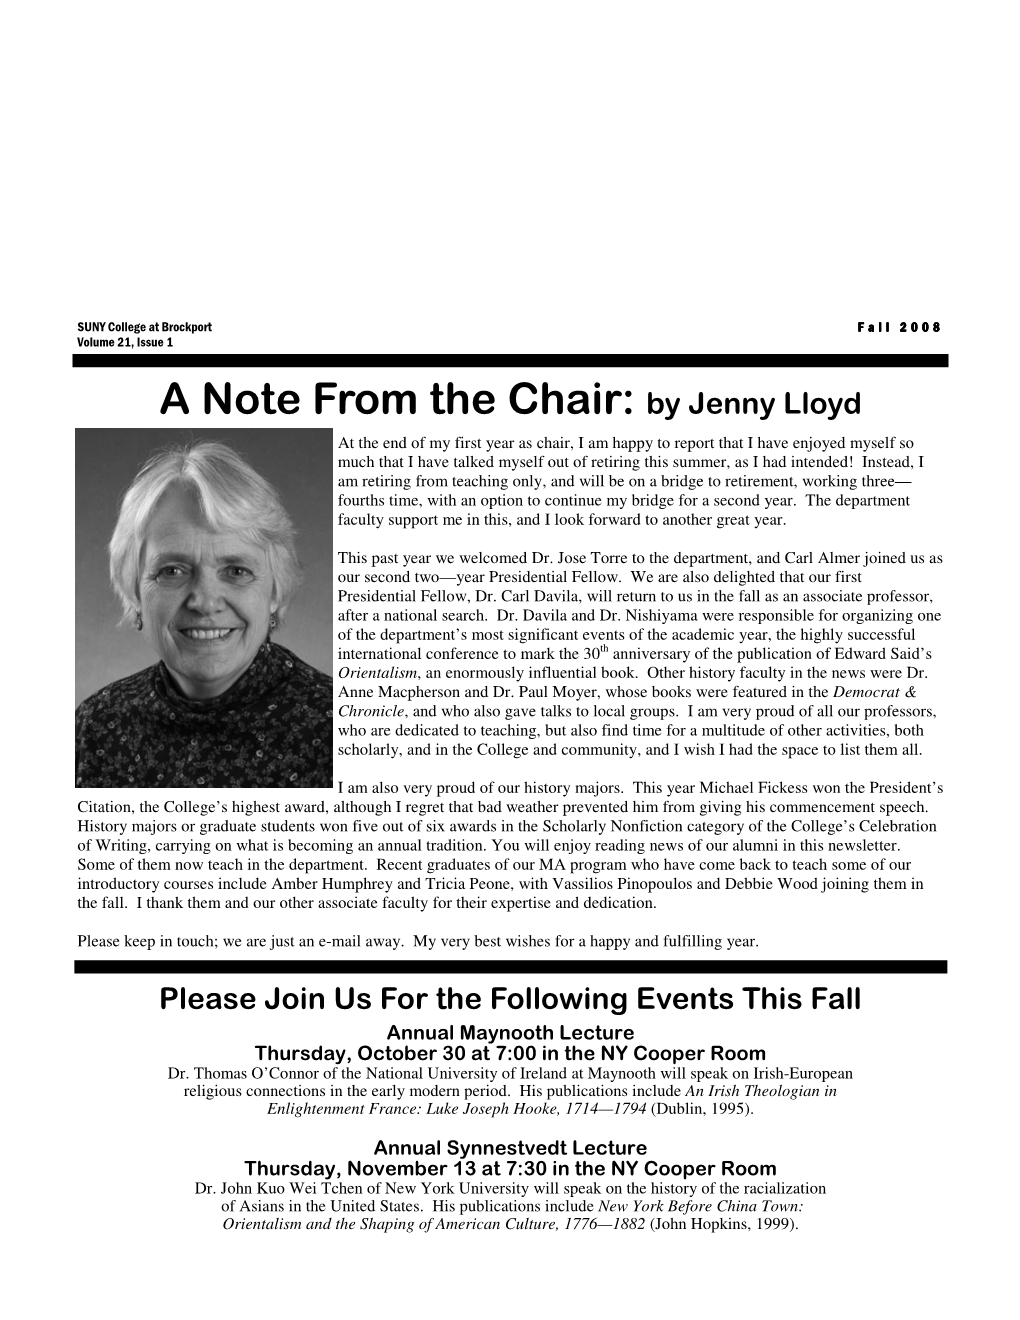 2008 Newsletter